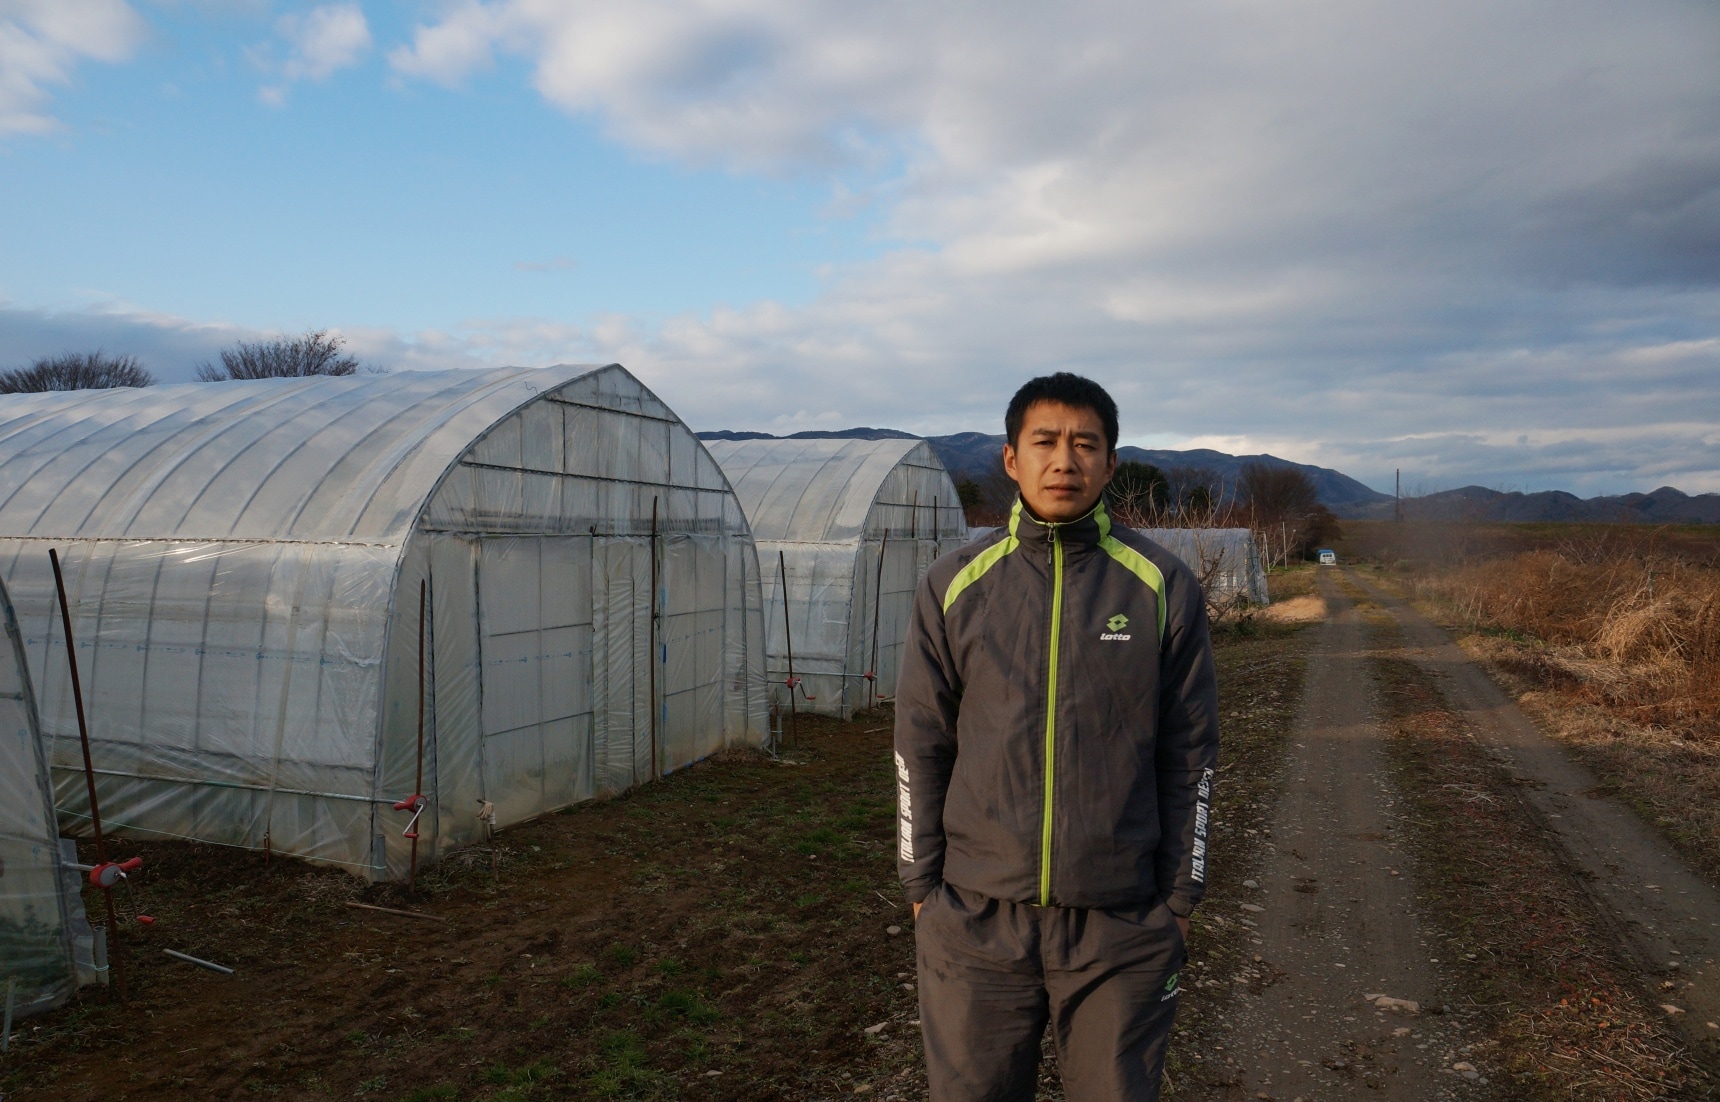 후쿠시마의 채소는 안전한 것일까? 중국인 농가는 말한다